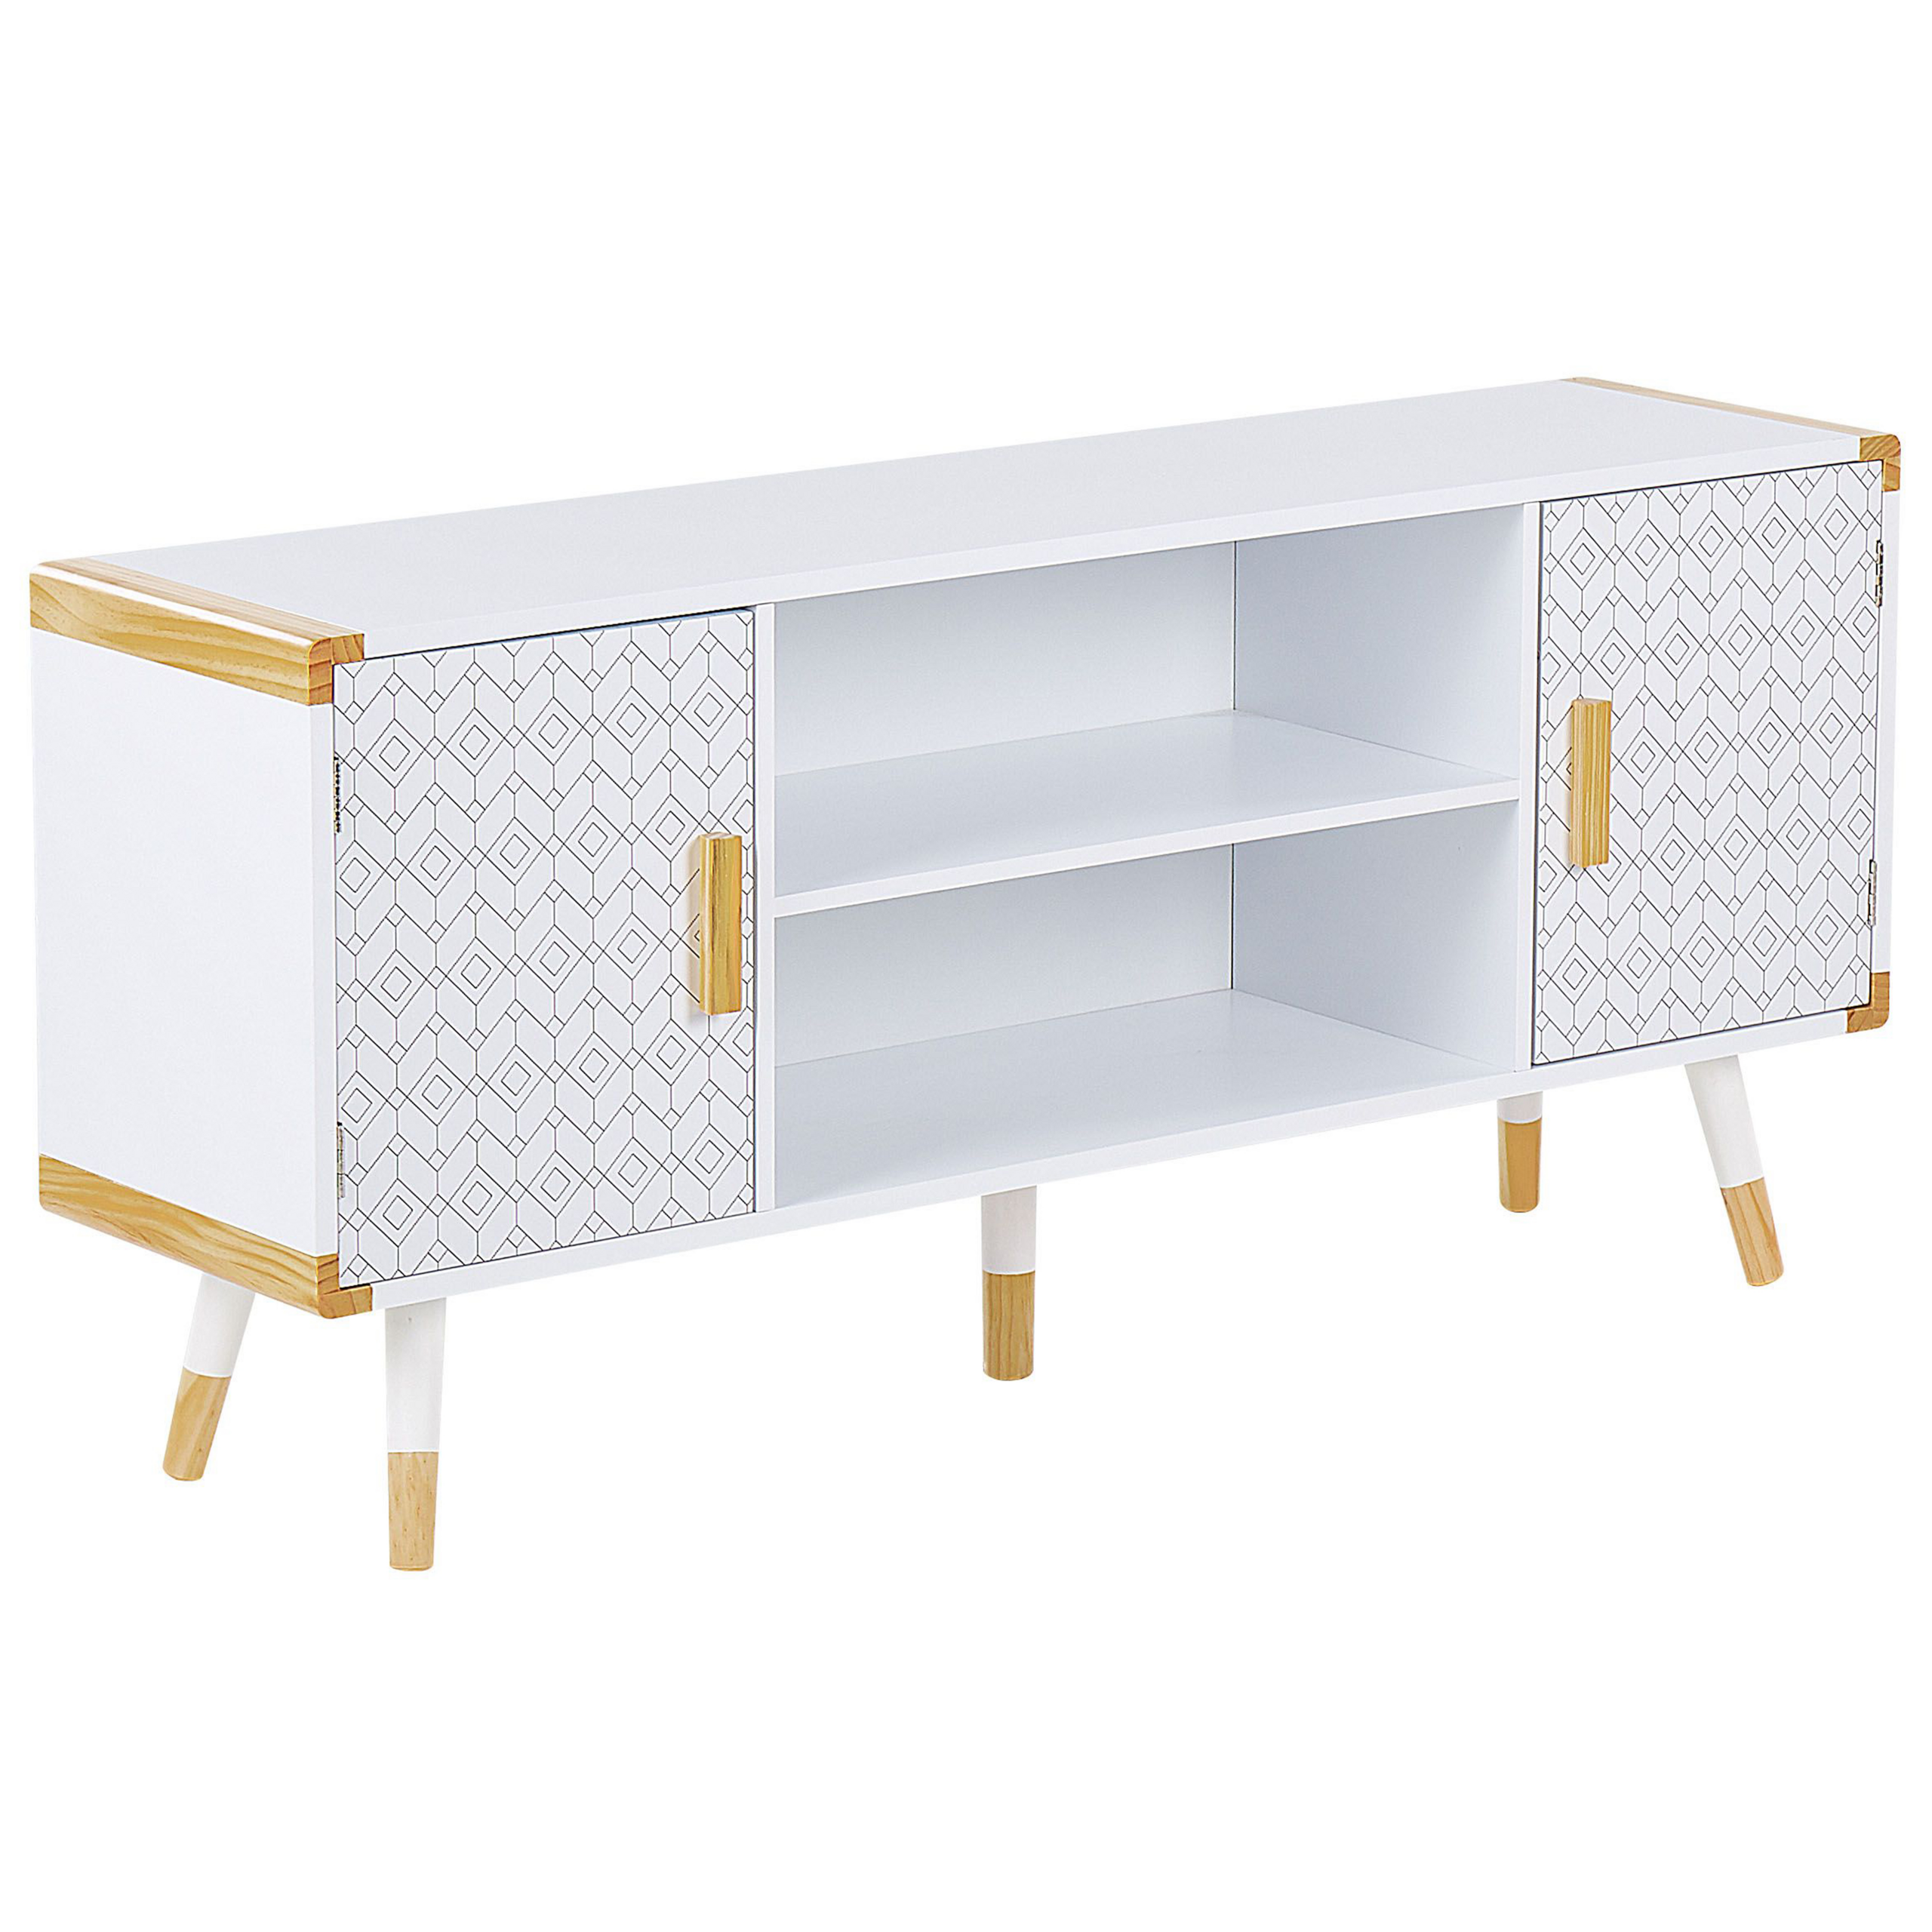 Beliani Suporte para TV com design escandinavo, madeira branca 2 prateleiras para armazenamento na sala de estar